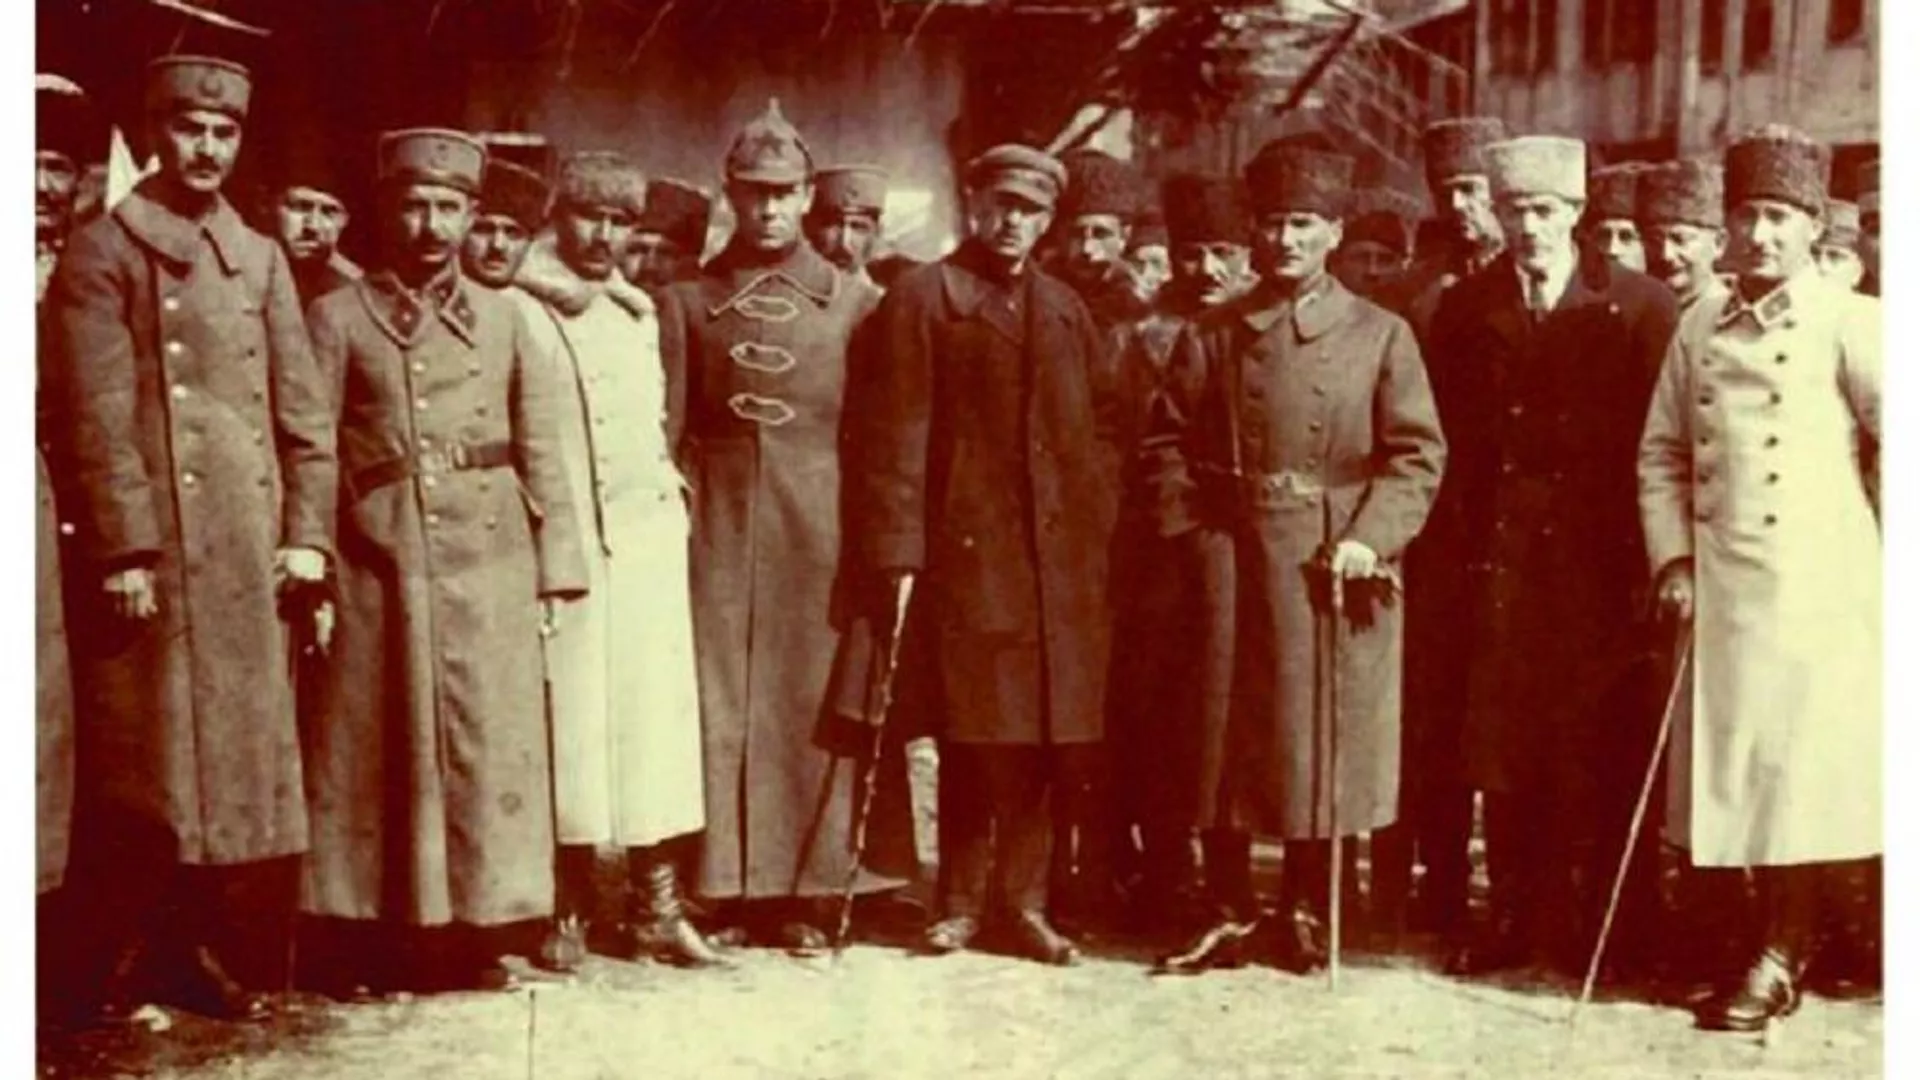 Sovyet Büyükelçisi’nin Büyük Taarruz’daki rolü: Elçilikte davet verdi, Atatürk’ün cepheye gittiğini gizledi